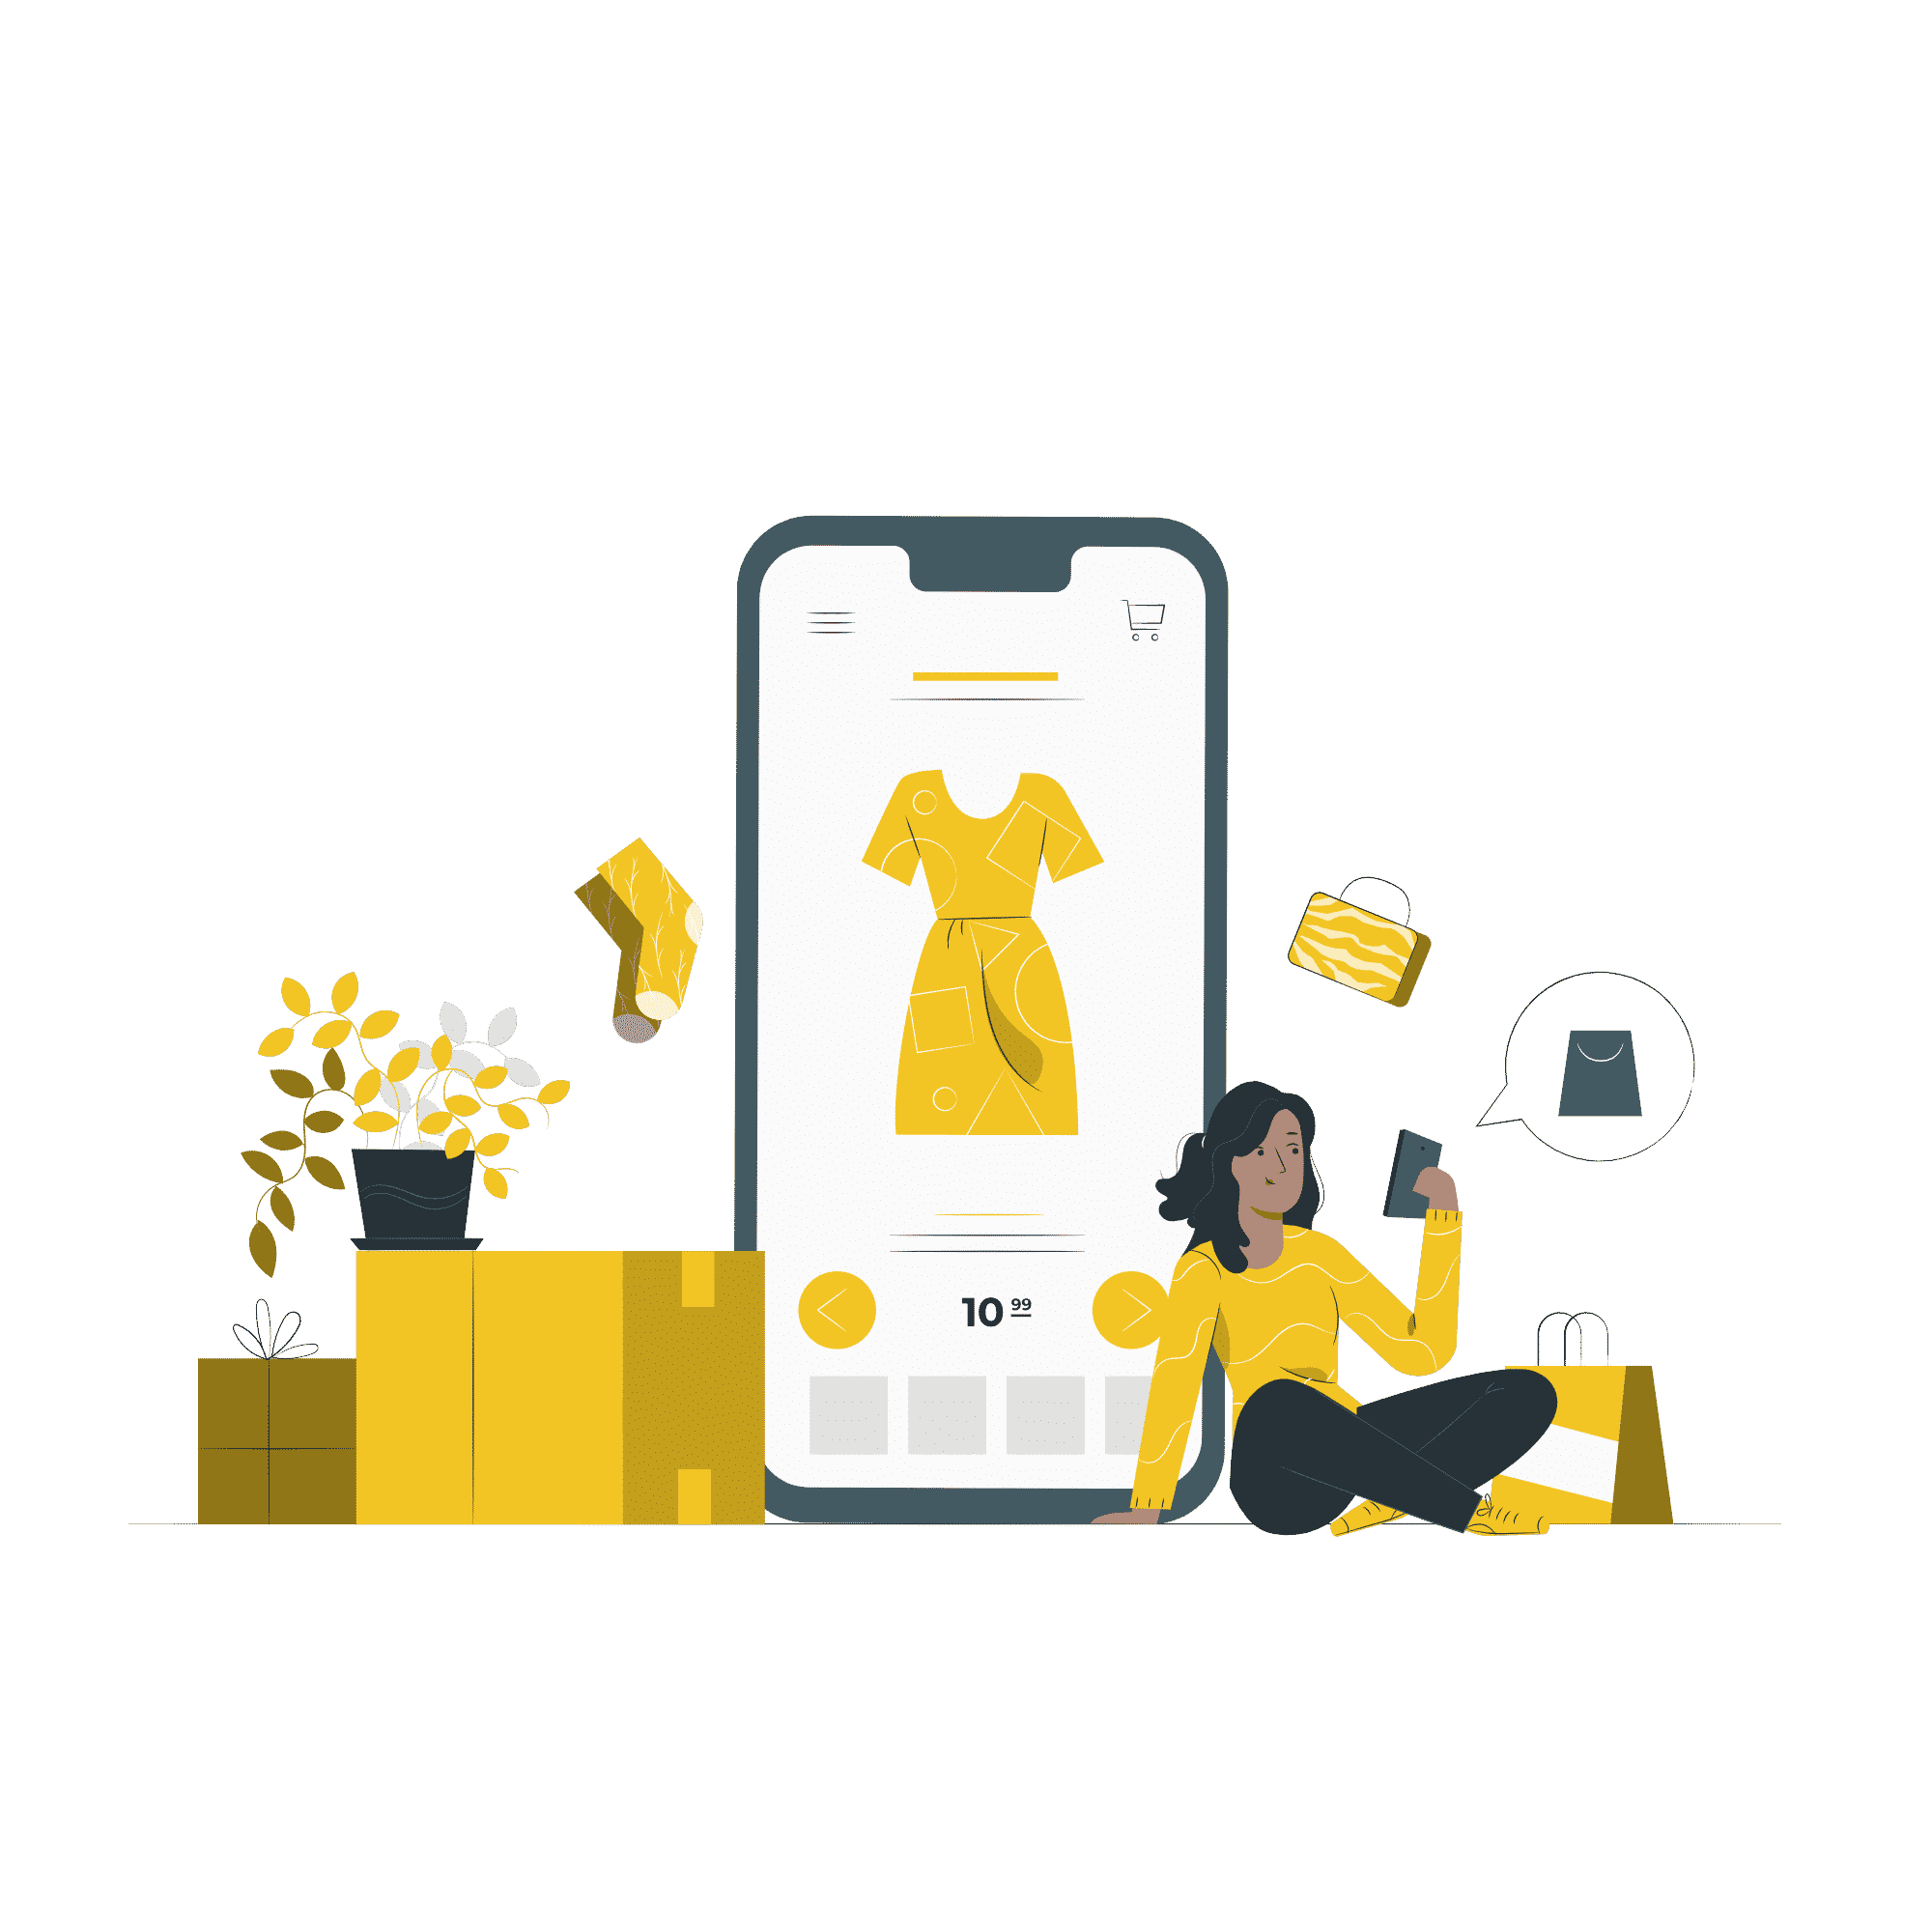 Femme assise par terre et appuyée sur un smartphone montrant une page produit d'une robe jaune